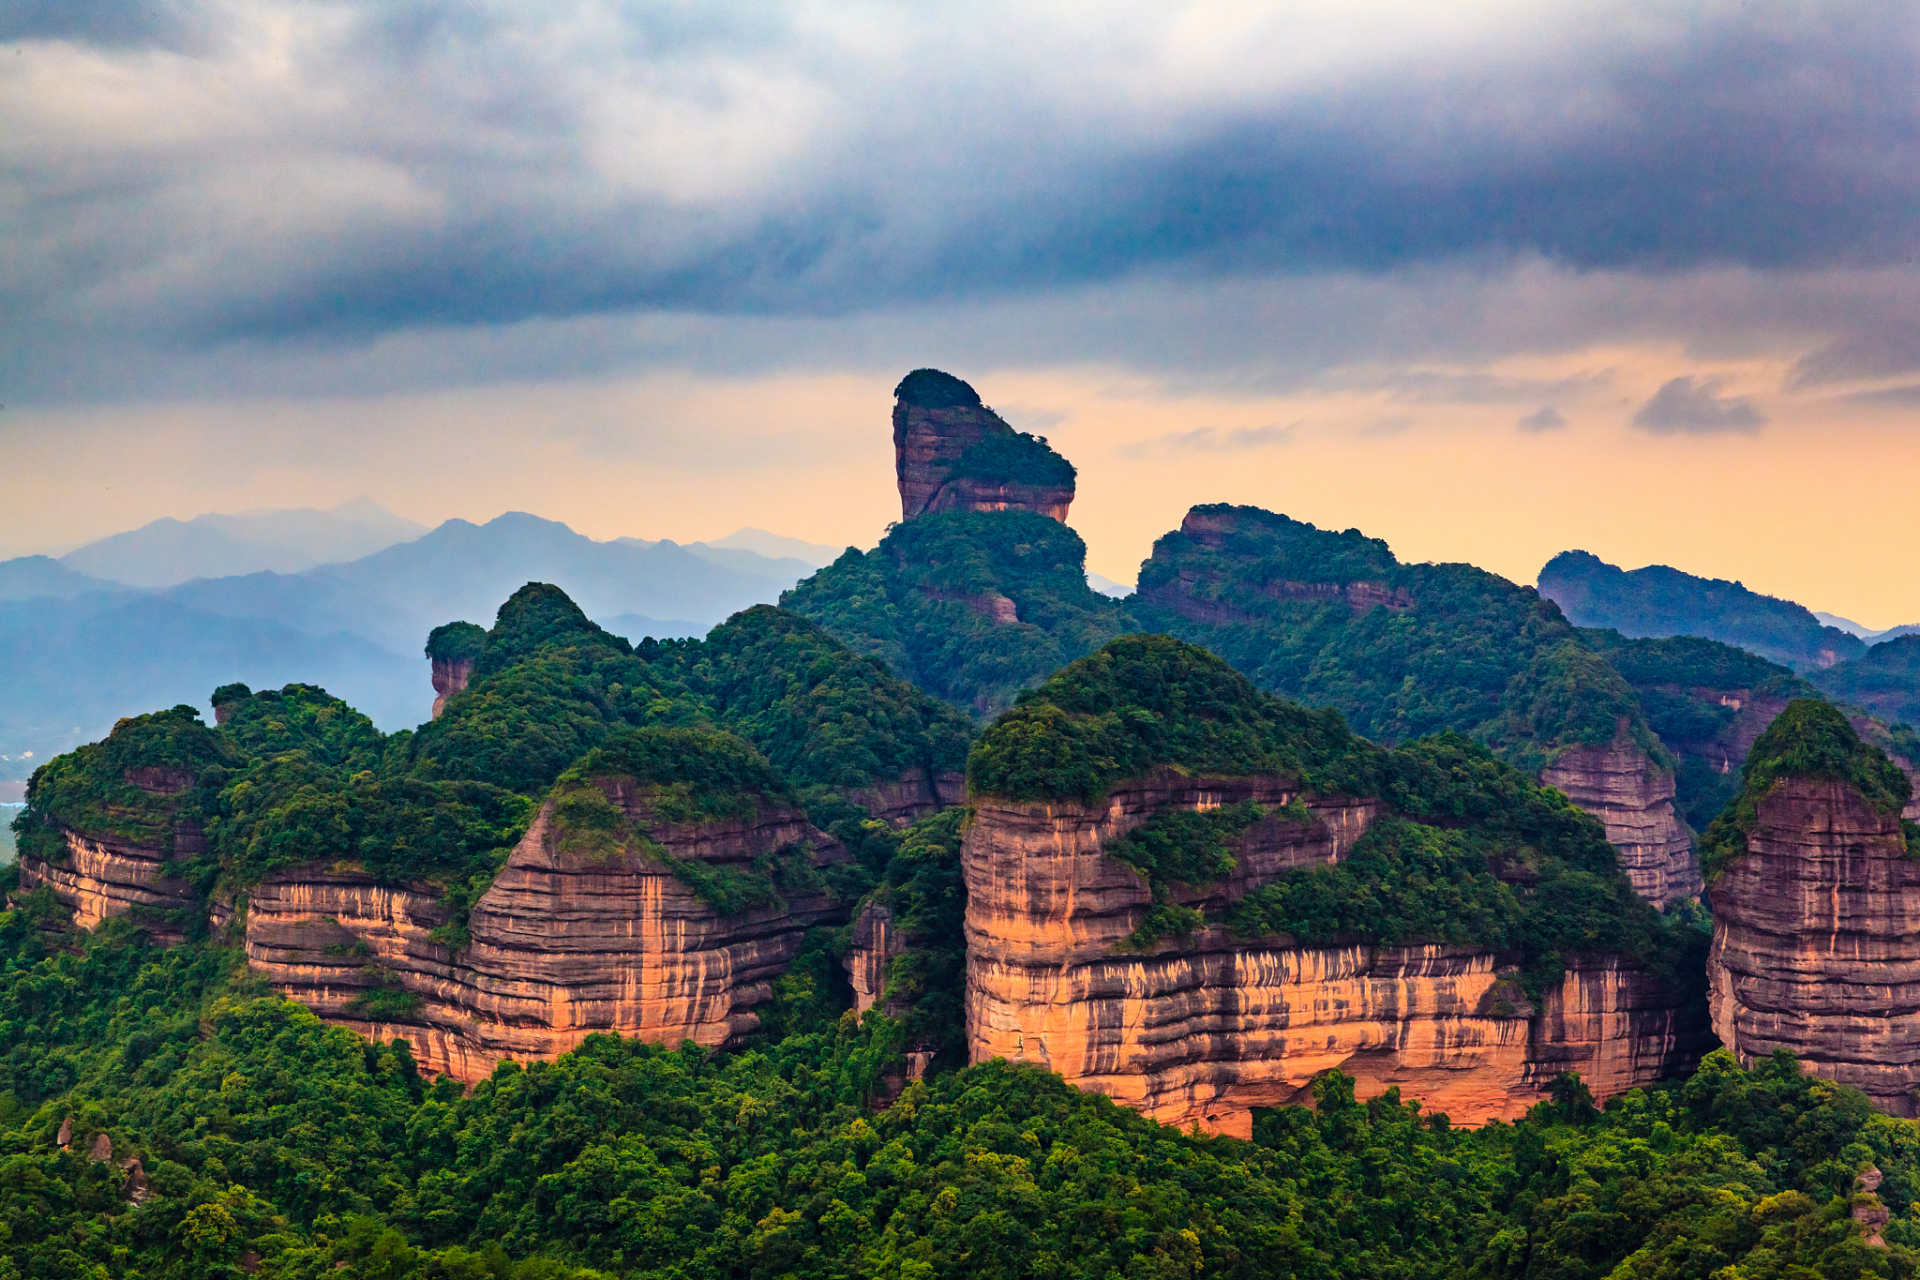 丹霞山:丹霞山位于广东省韶关市,是一个以丹霞地貌著称的自然保护区